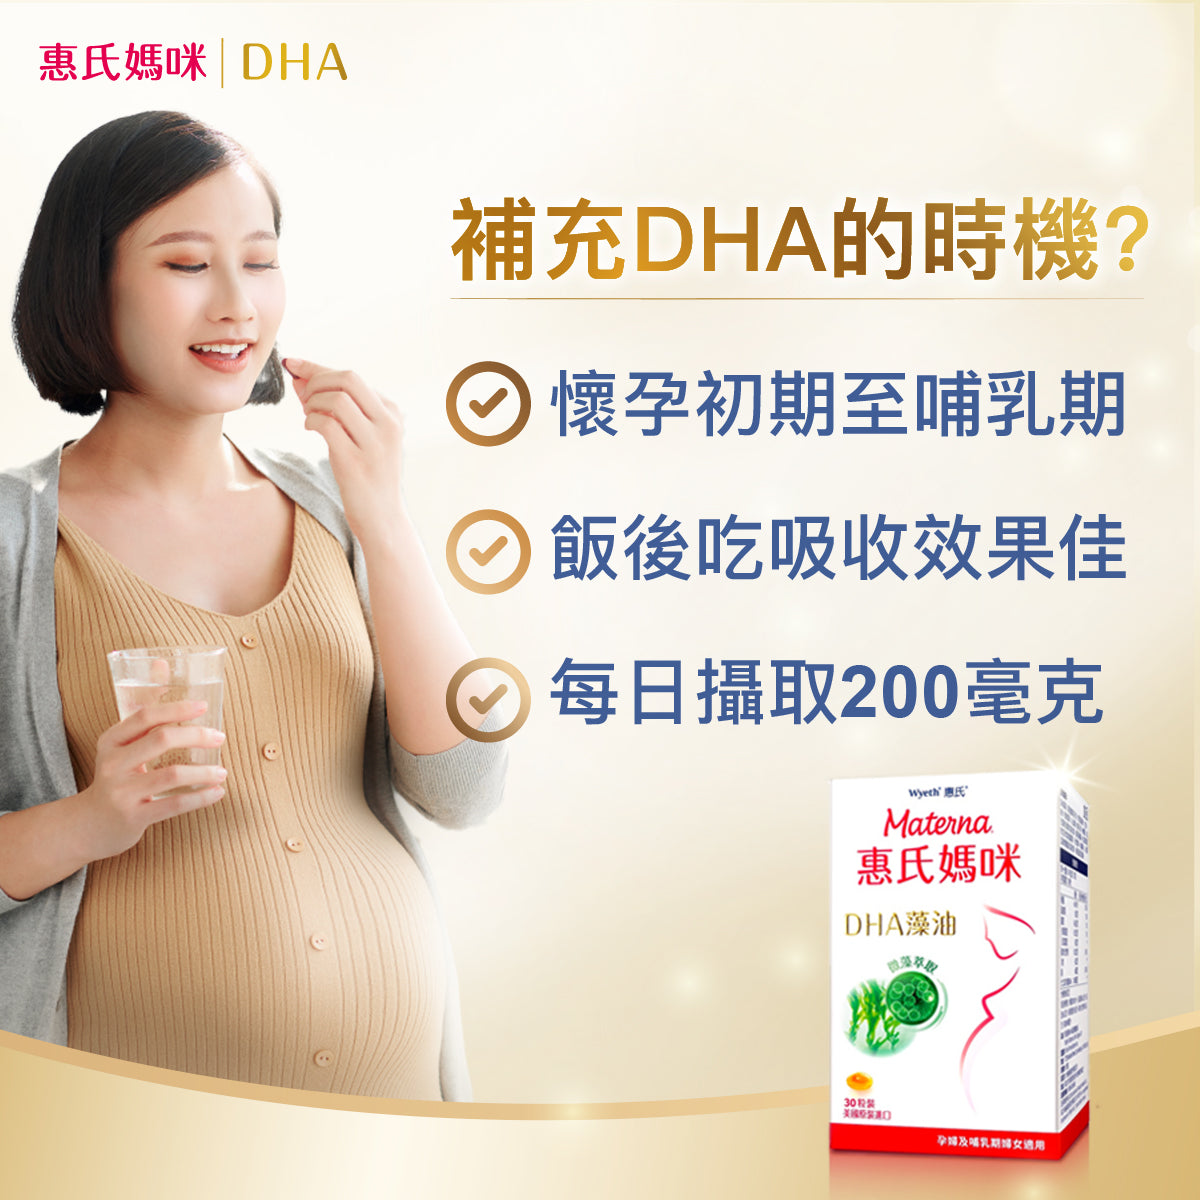 ▲ 孕婦適合補充DHA的時機，從懷孕初期至哺乳期皆可持續補充，建議孕婦每天飯後補充DHA、且每日攝取200毫克DHA